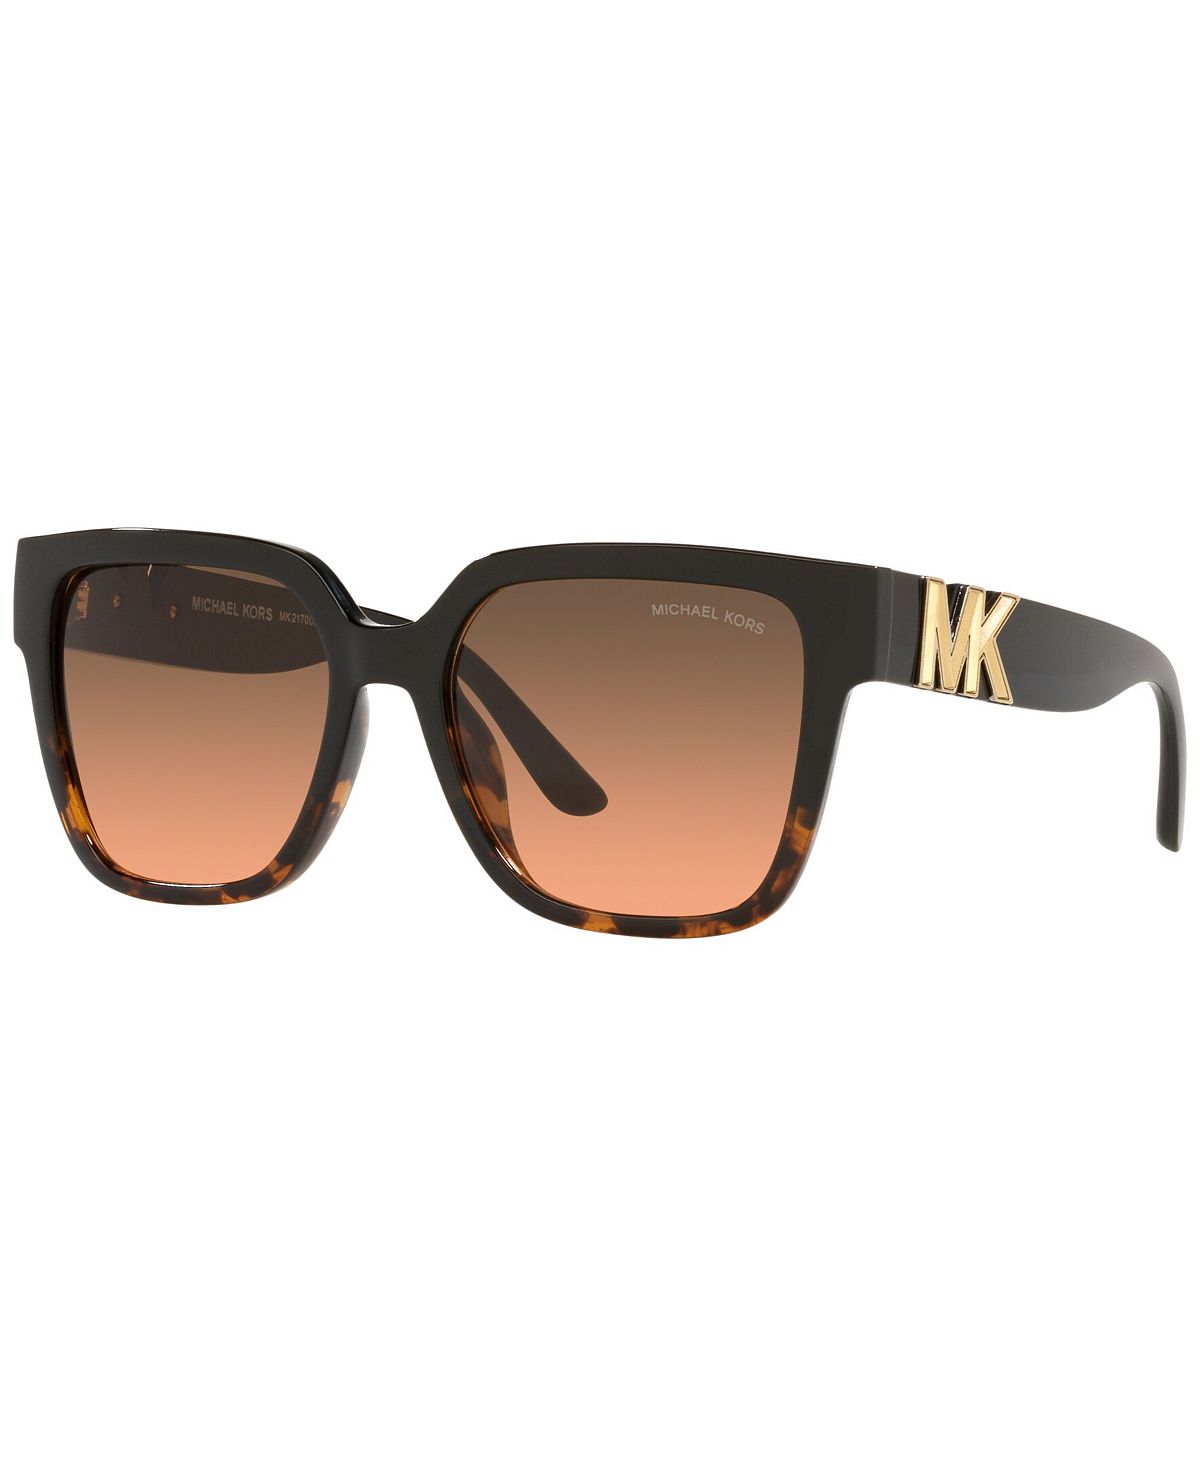 Женские солнцезащитные очки Karlie 54 Michael Kors